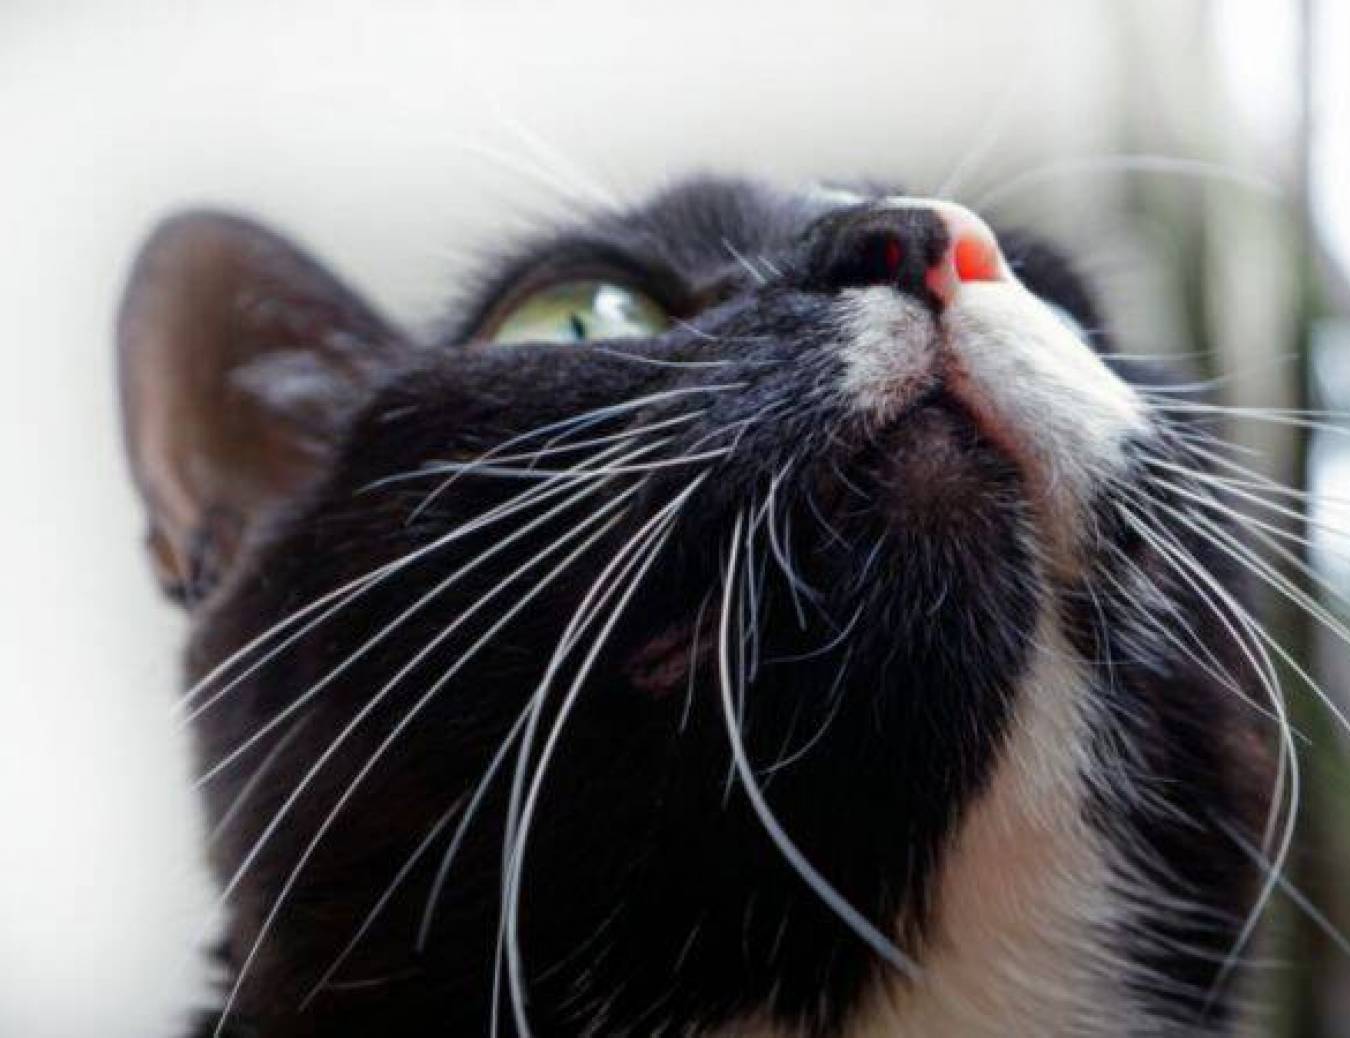 Koci katar – Przyczyny, objawy i sposoby leczenia